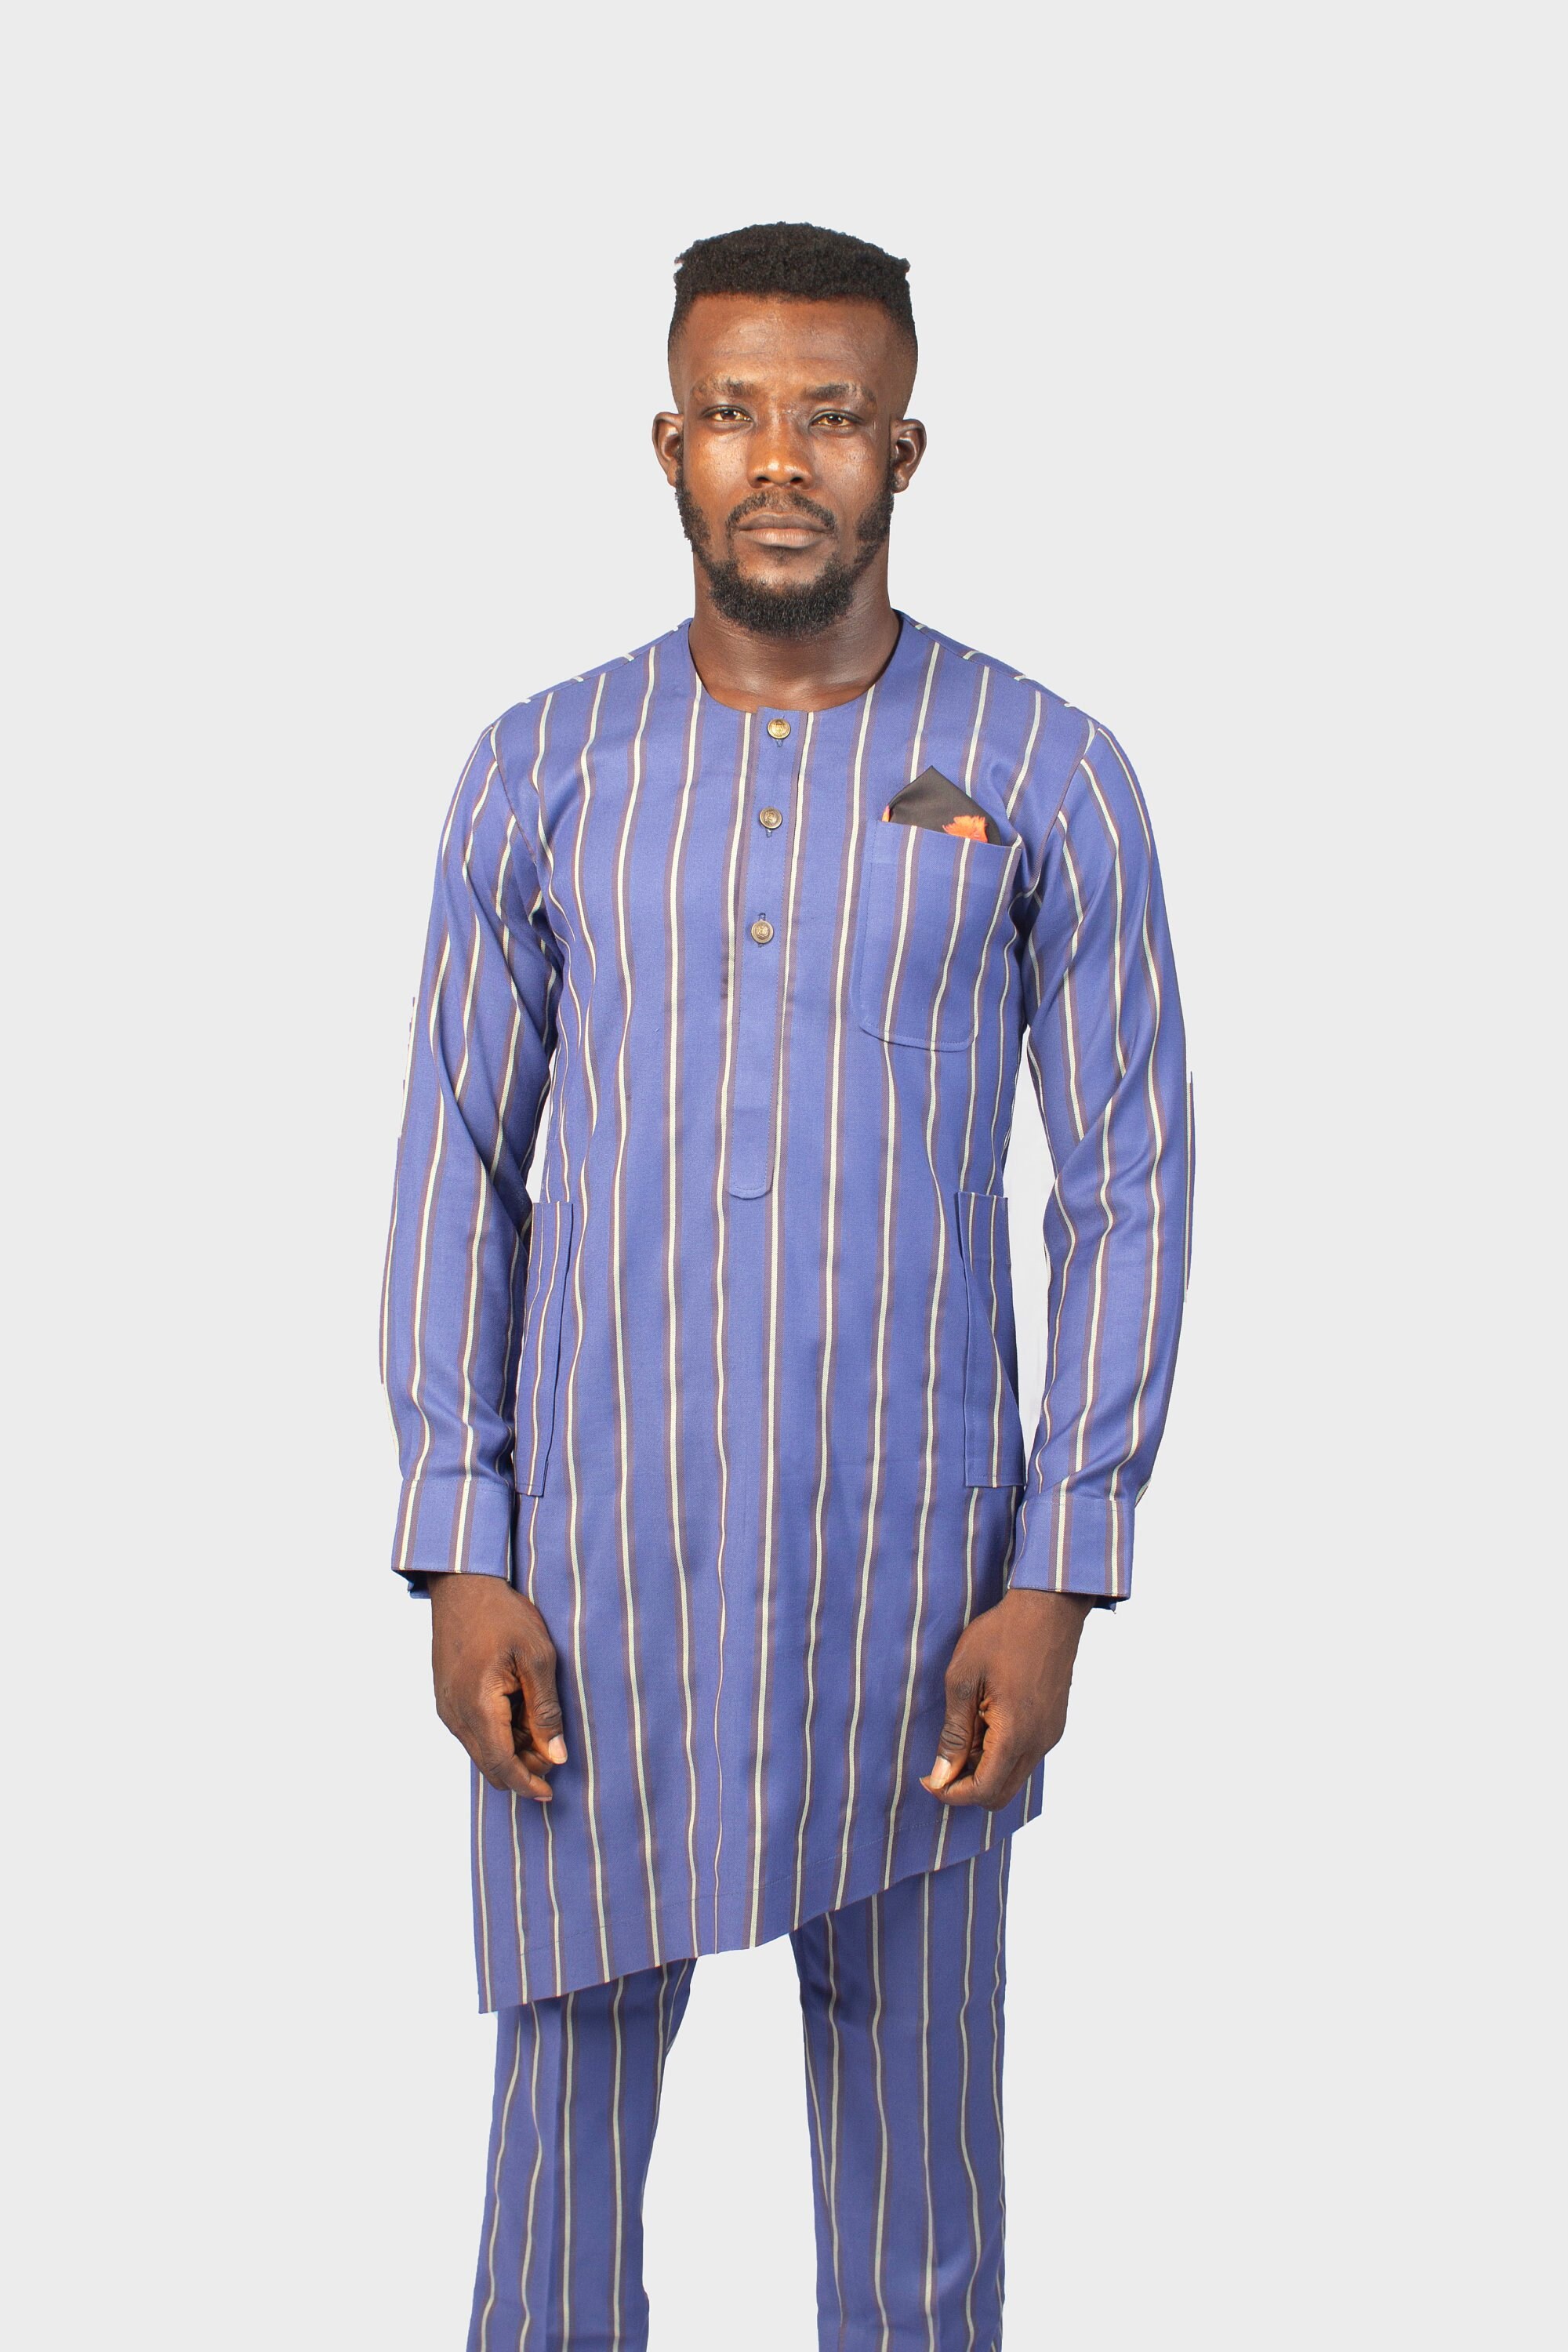 Diagonally Cut Chalk Stripe Blue Suit African Men Suit | Etsy